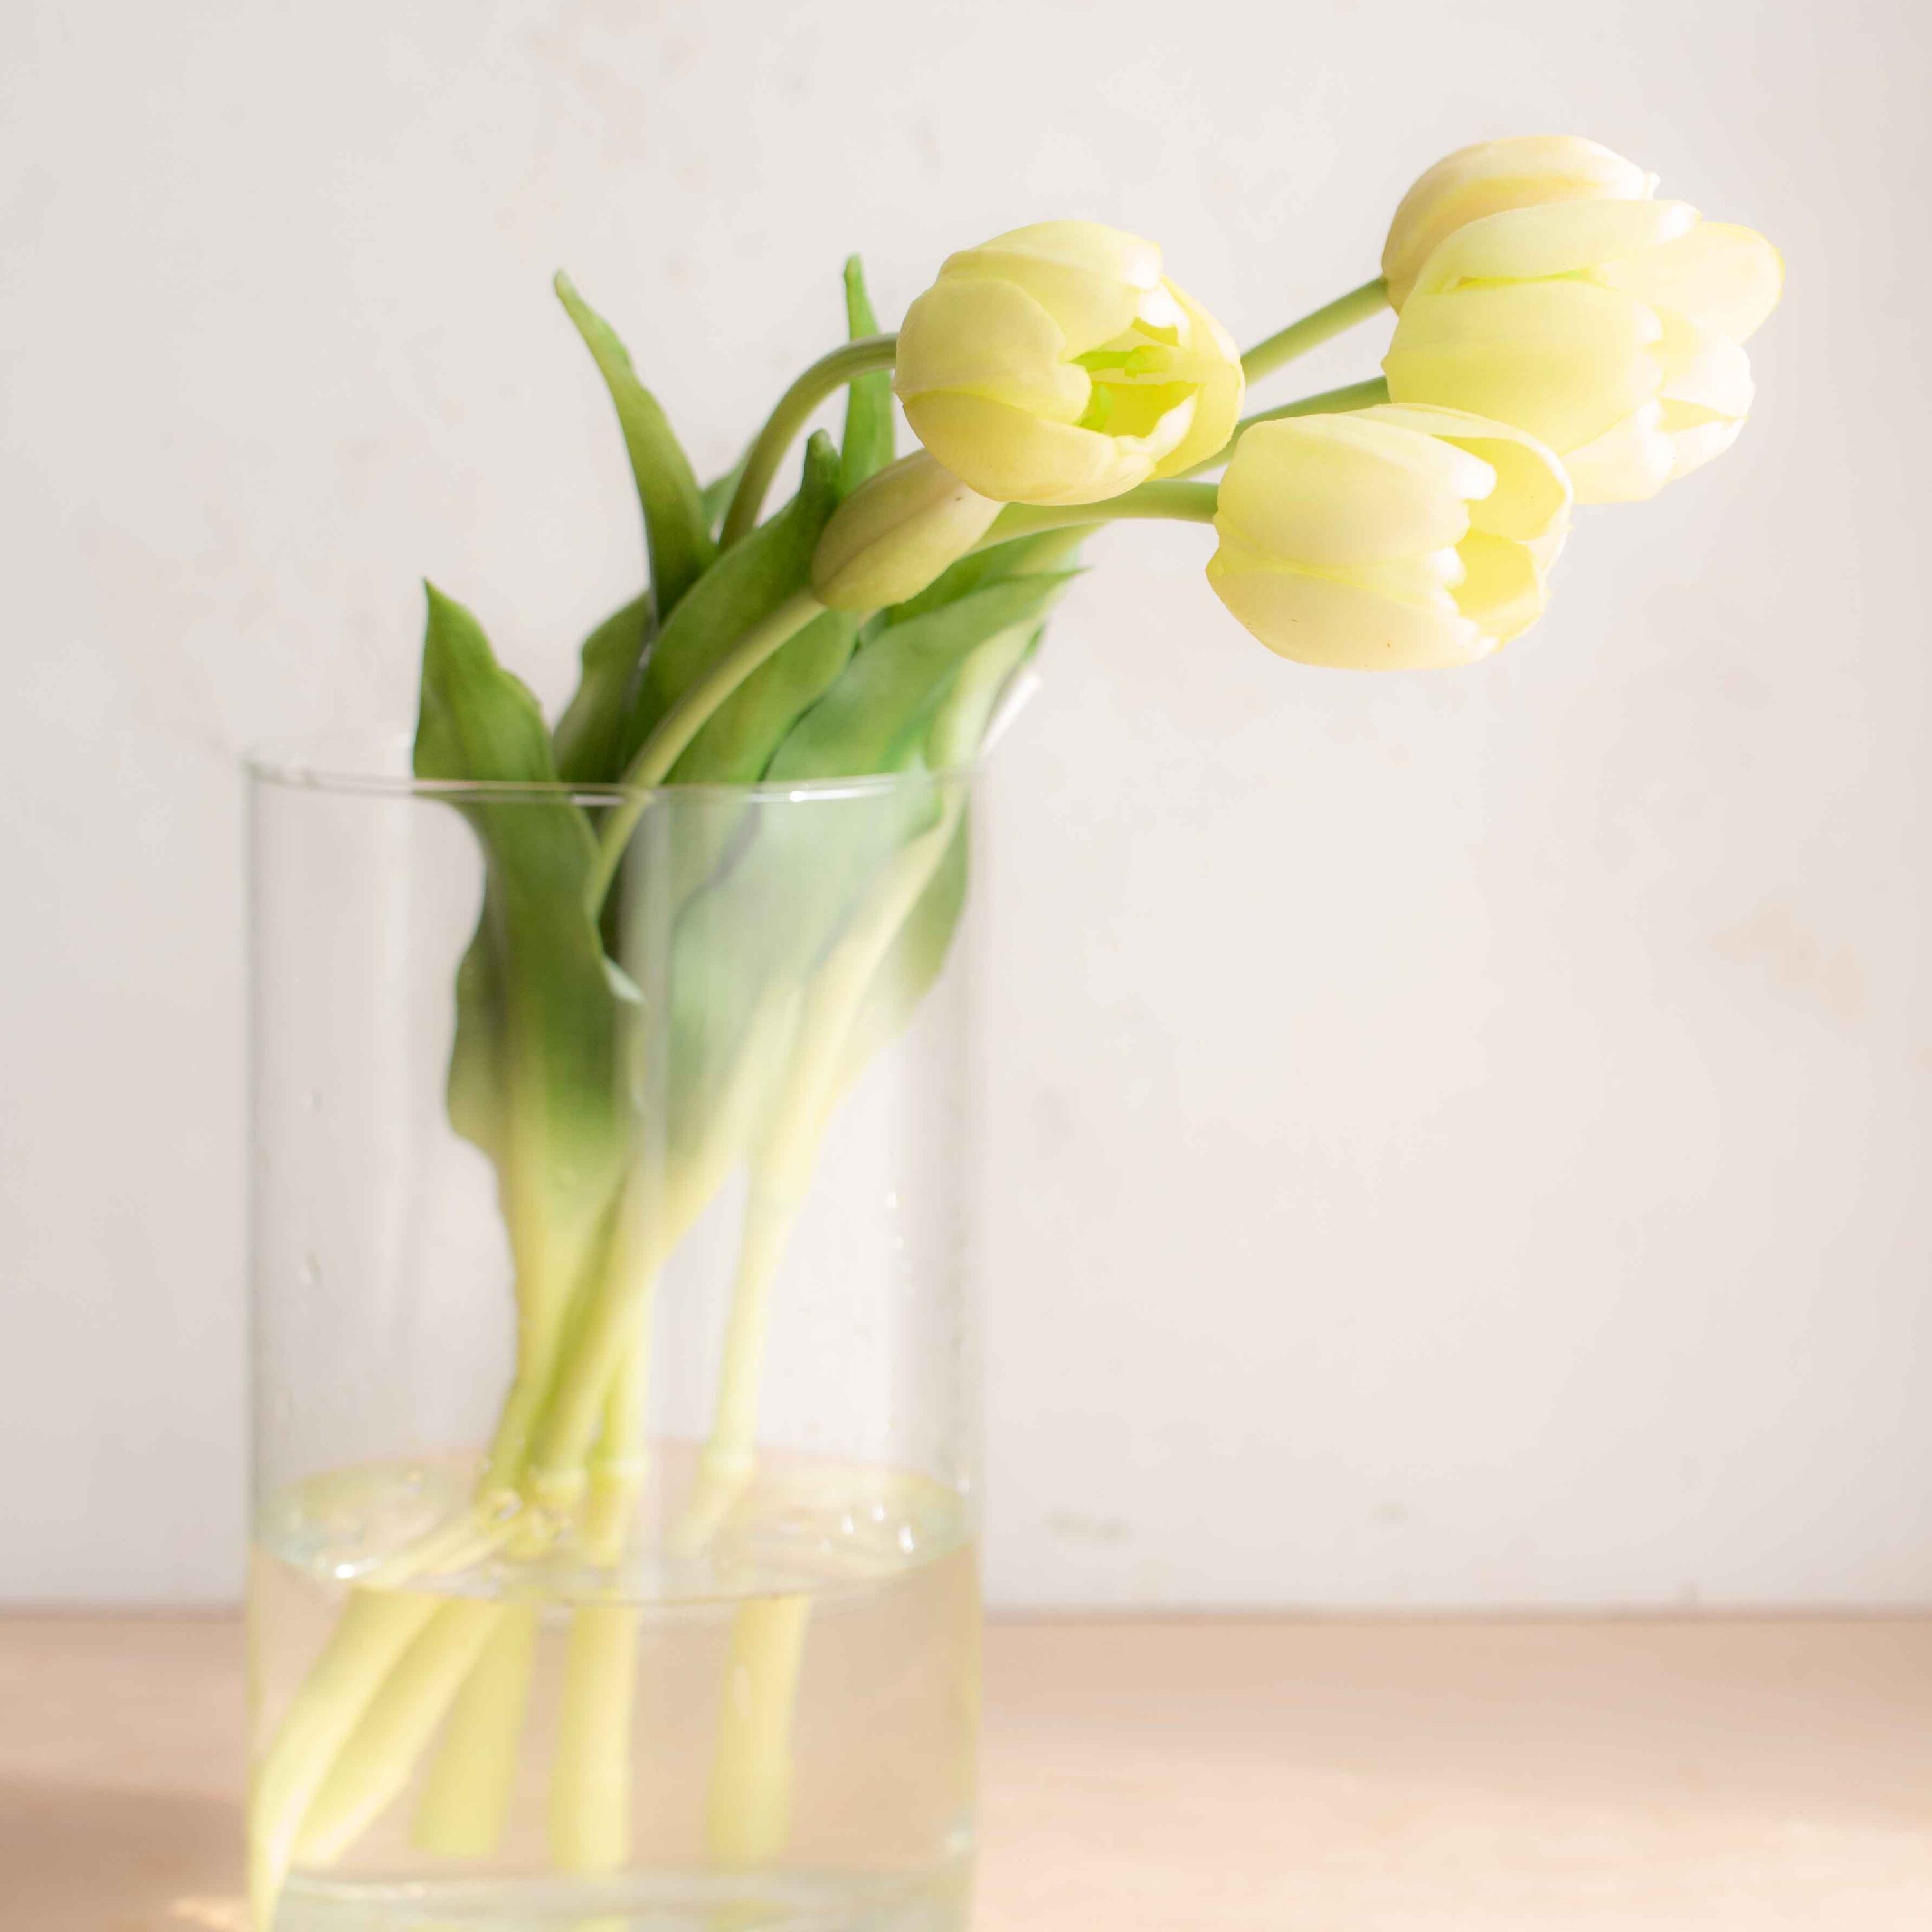 bellissimi tulipani real touch, estremamente realistici colore bianco caldo